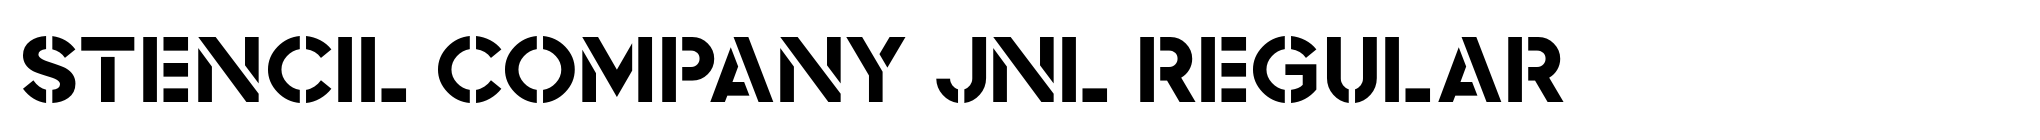 Stencil Company JNL Regular image